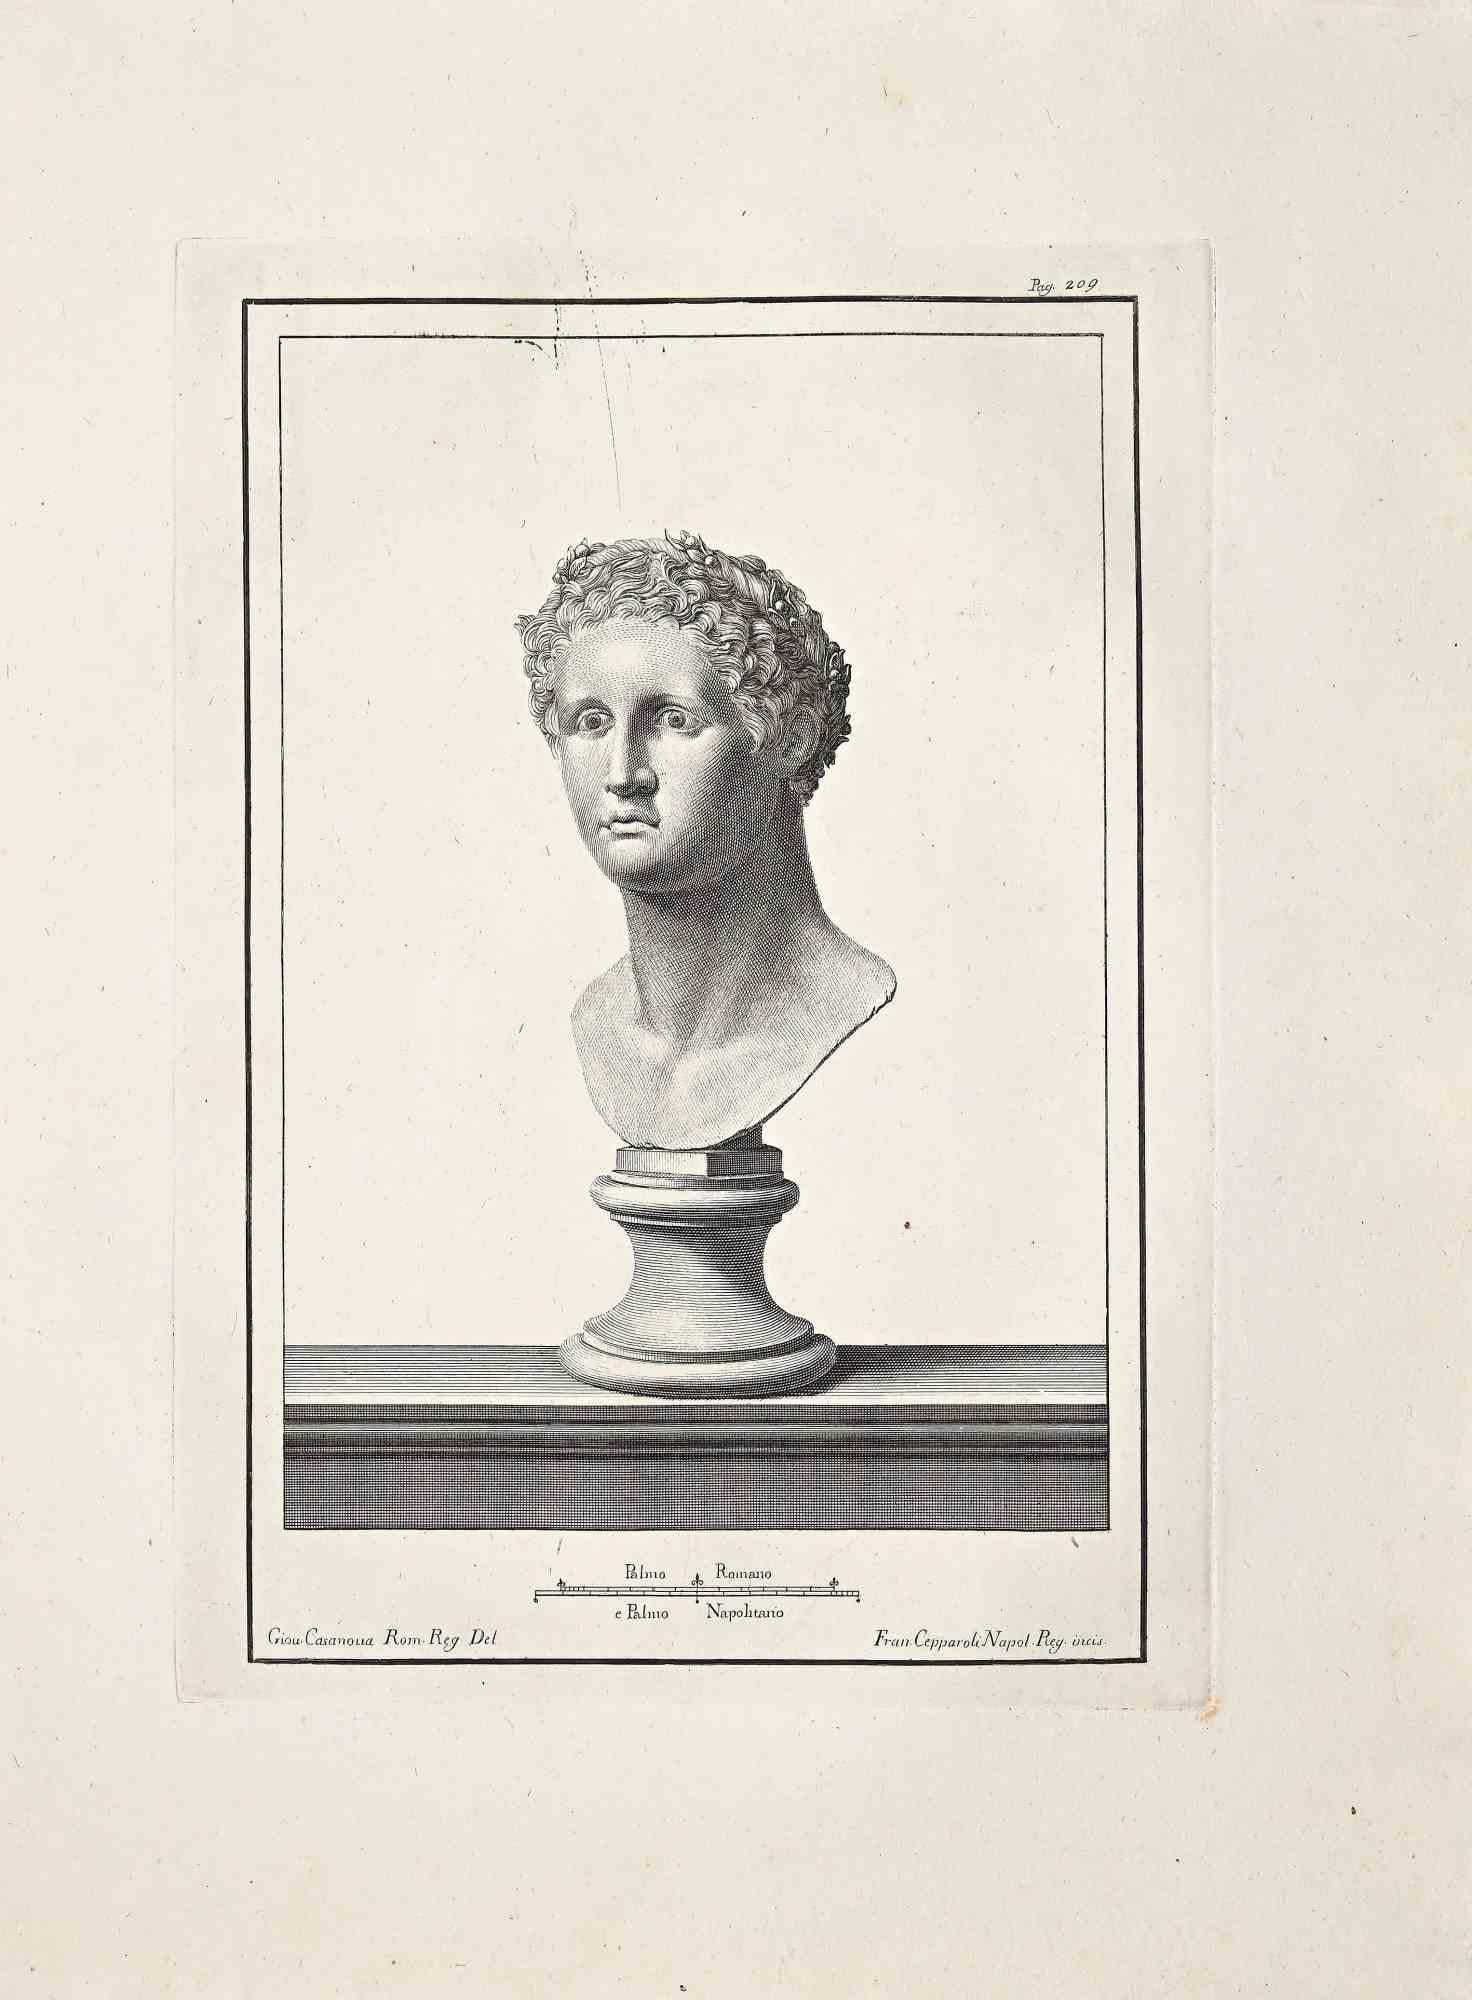 Antiquities of Herculaneum Exposed - Original Etching  - 18th Century